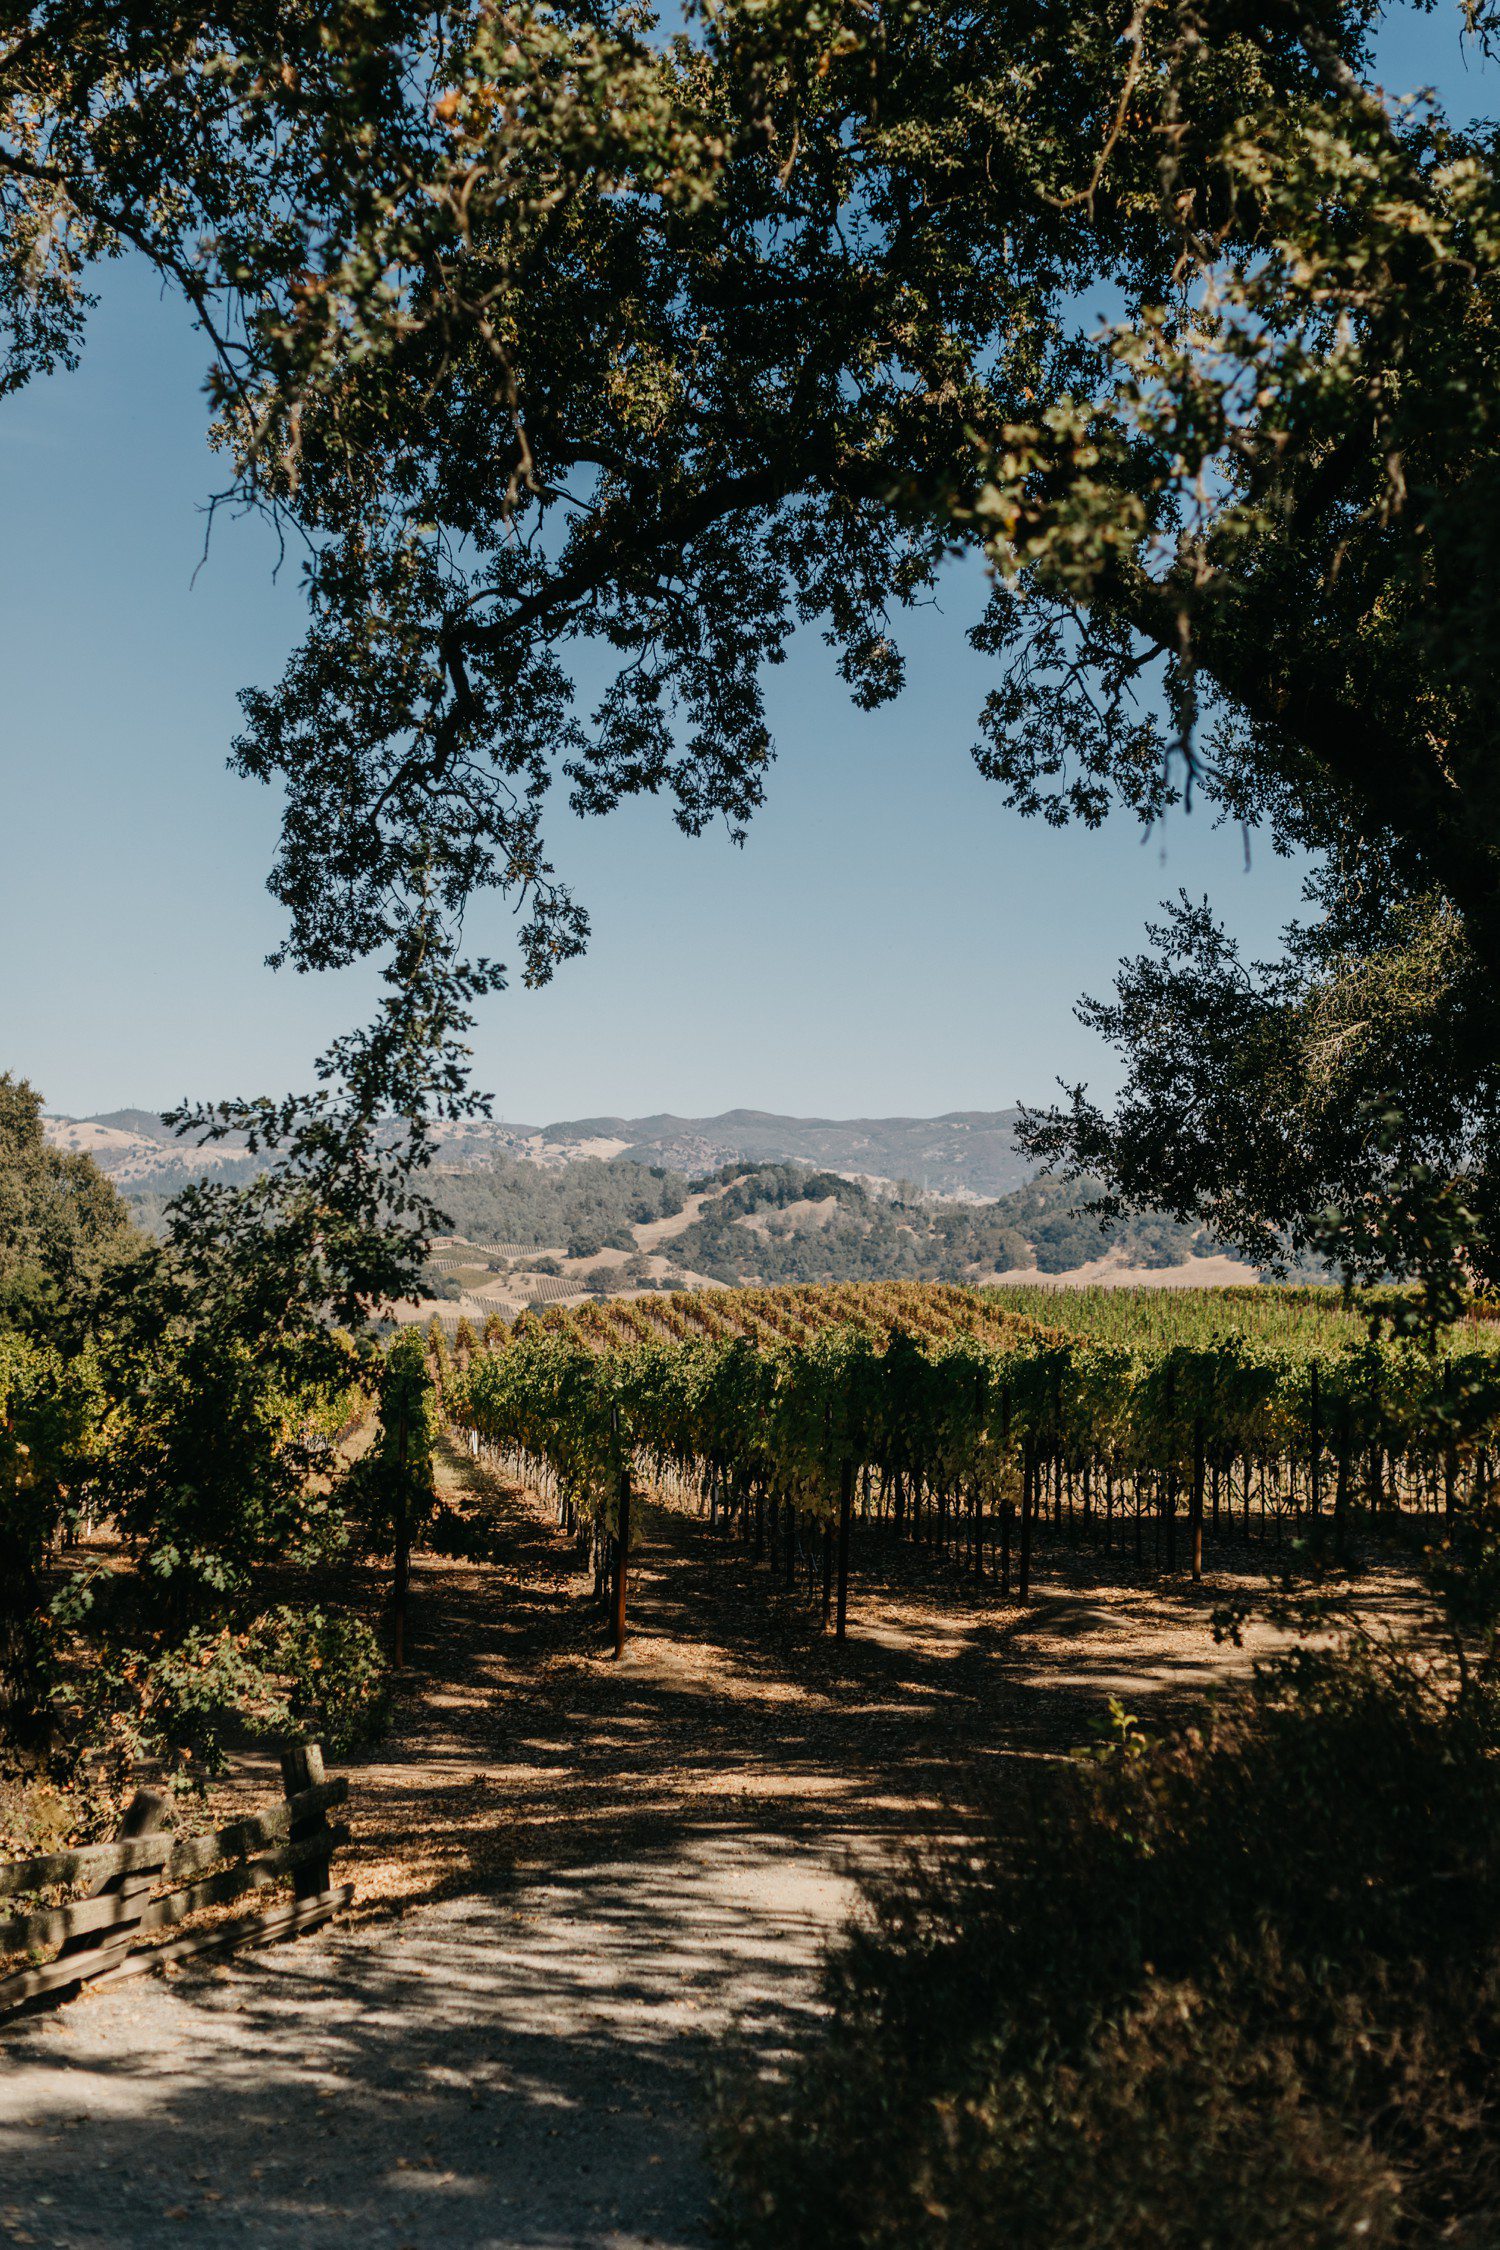 Vineyard in Sonoma County California